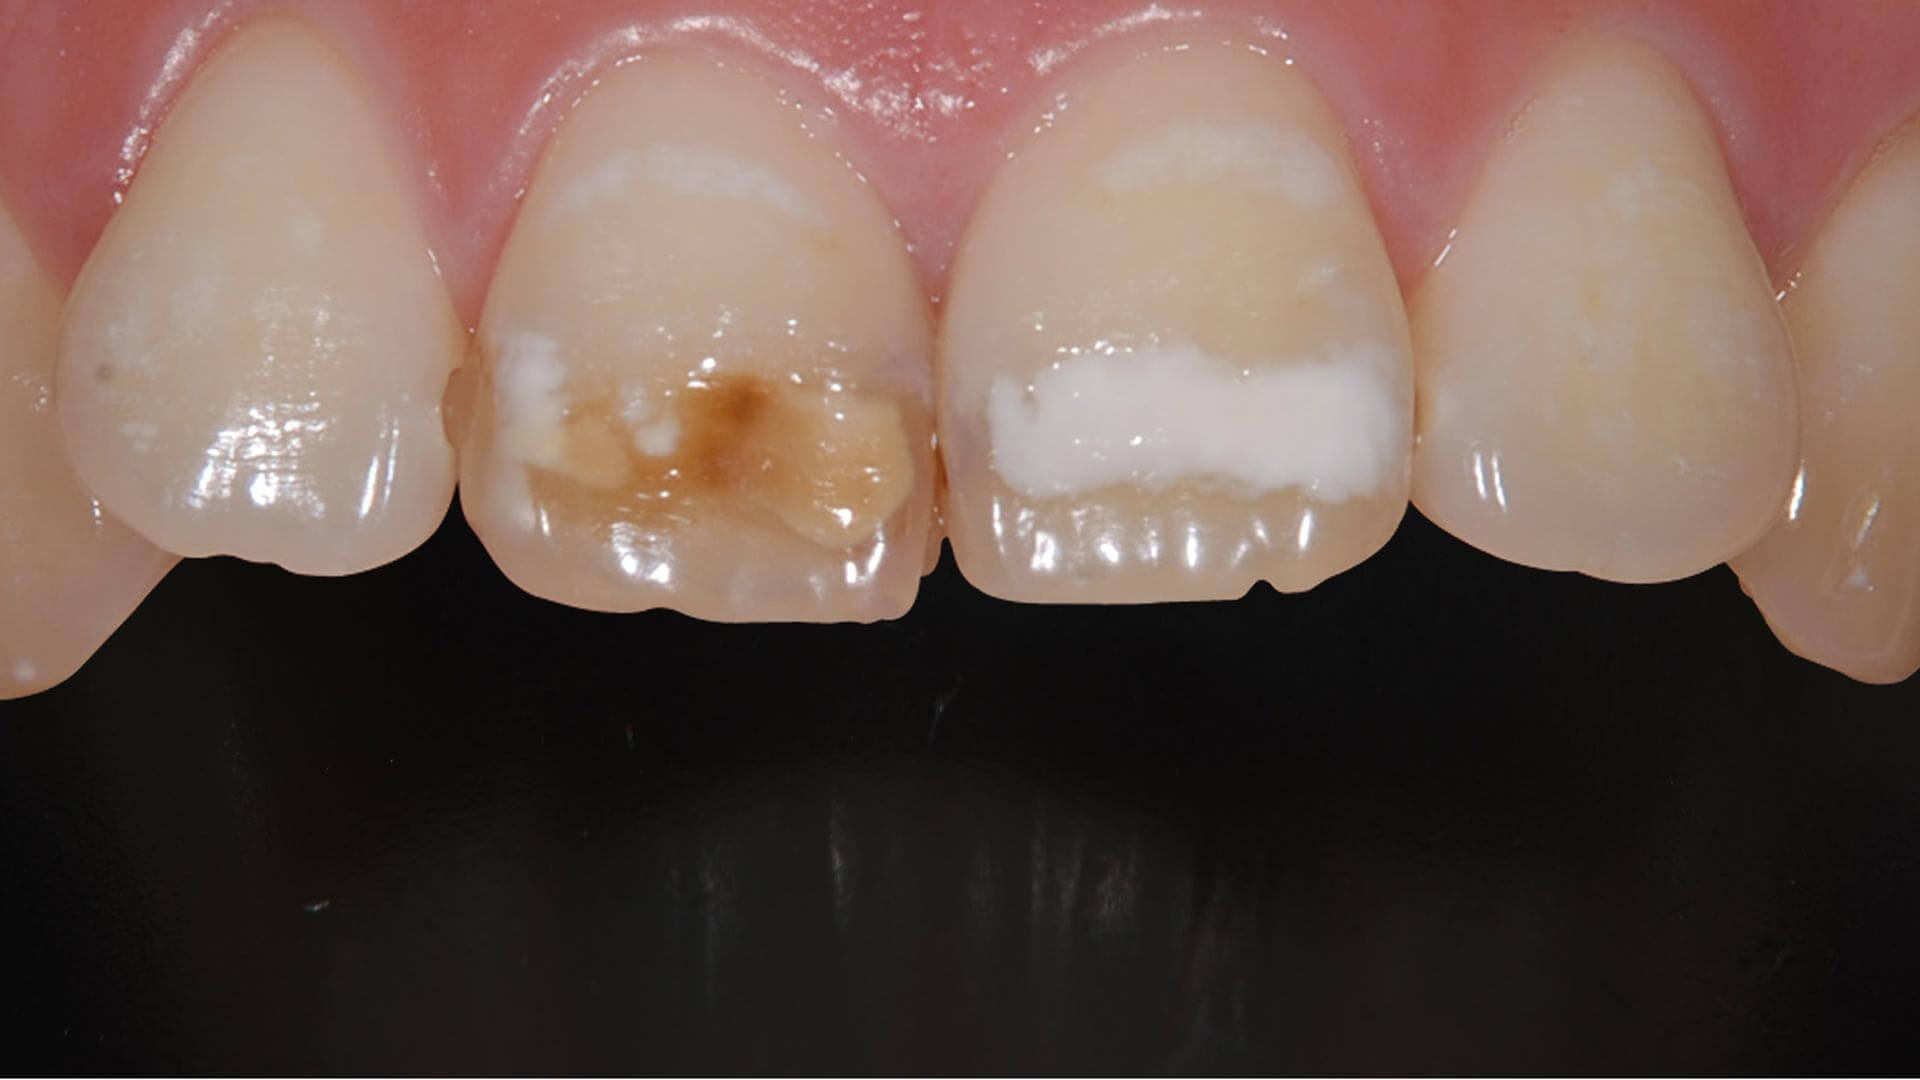 ホワイトスポット 歯の白い斑点は消えるの 明石アップル歯科